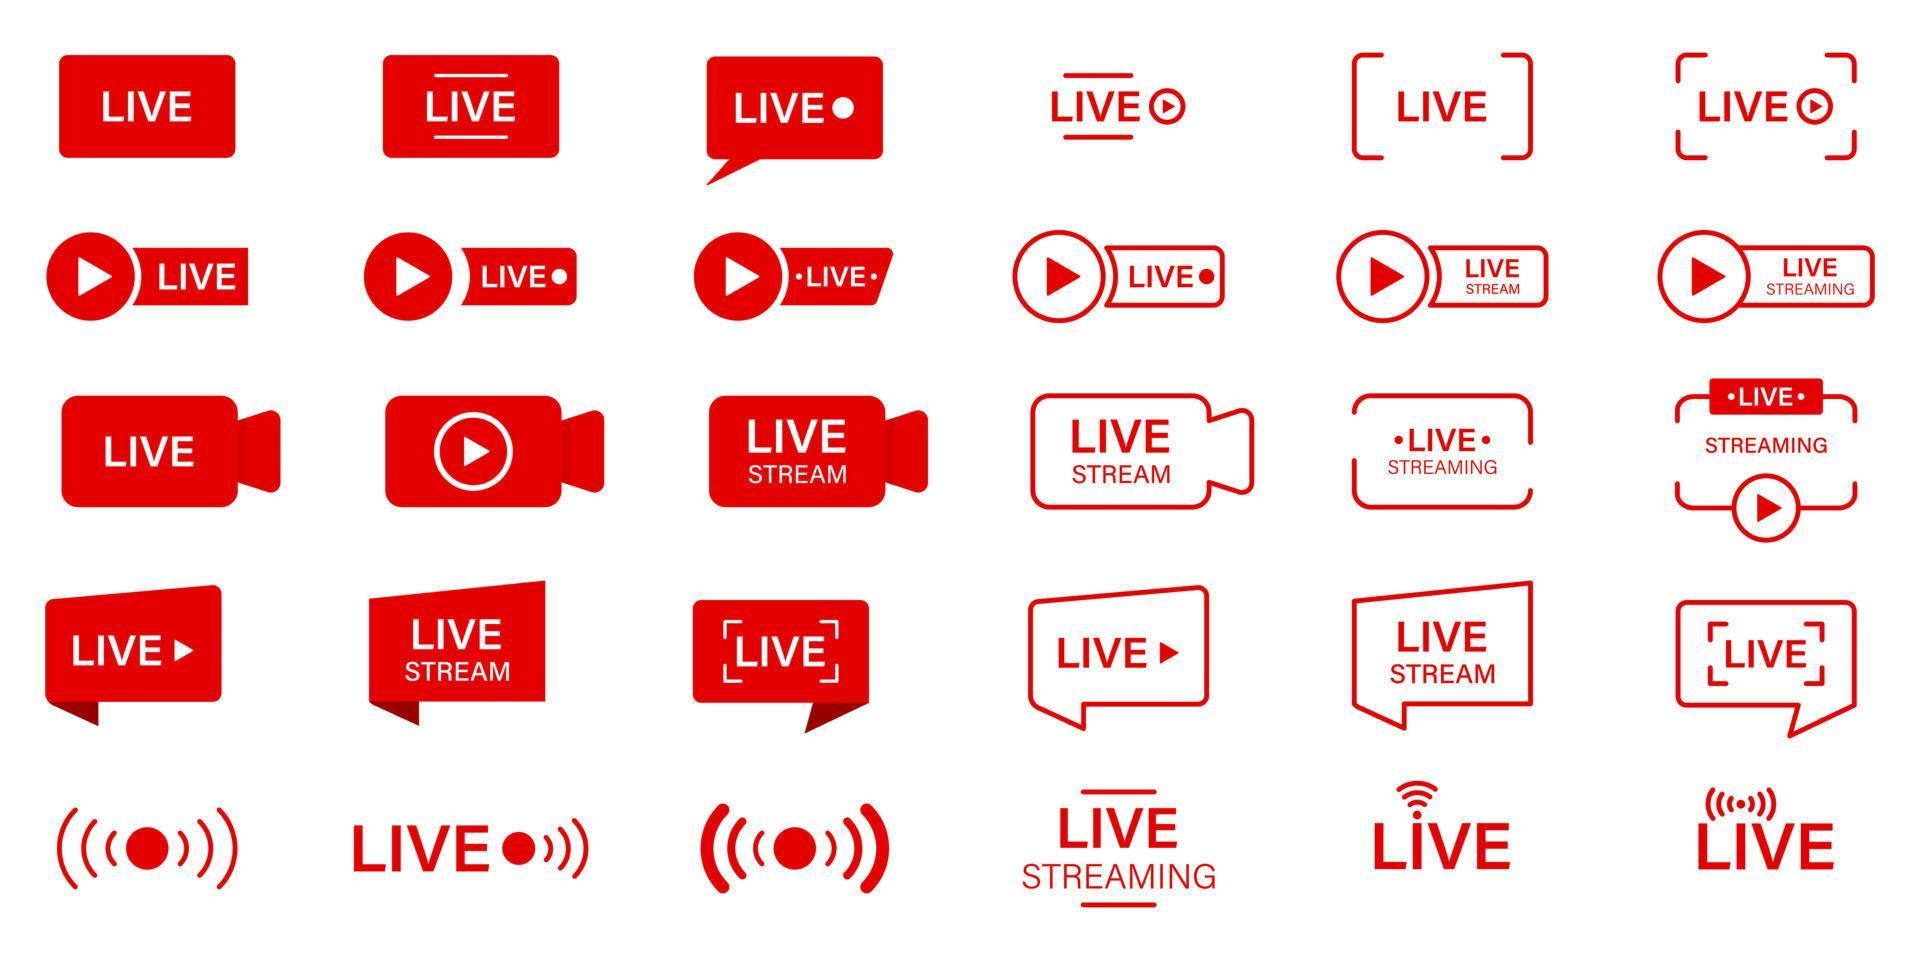 Live-Stream-Liniensymbol. Piktogramm für Online-Broadcast-Schaltflächen. rotes Symbol für Livestream. Live-Stream-Zeichensatz. Online-Nachrichten, Show, Fernsehsender. isolierte Vektorillustration. vektor